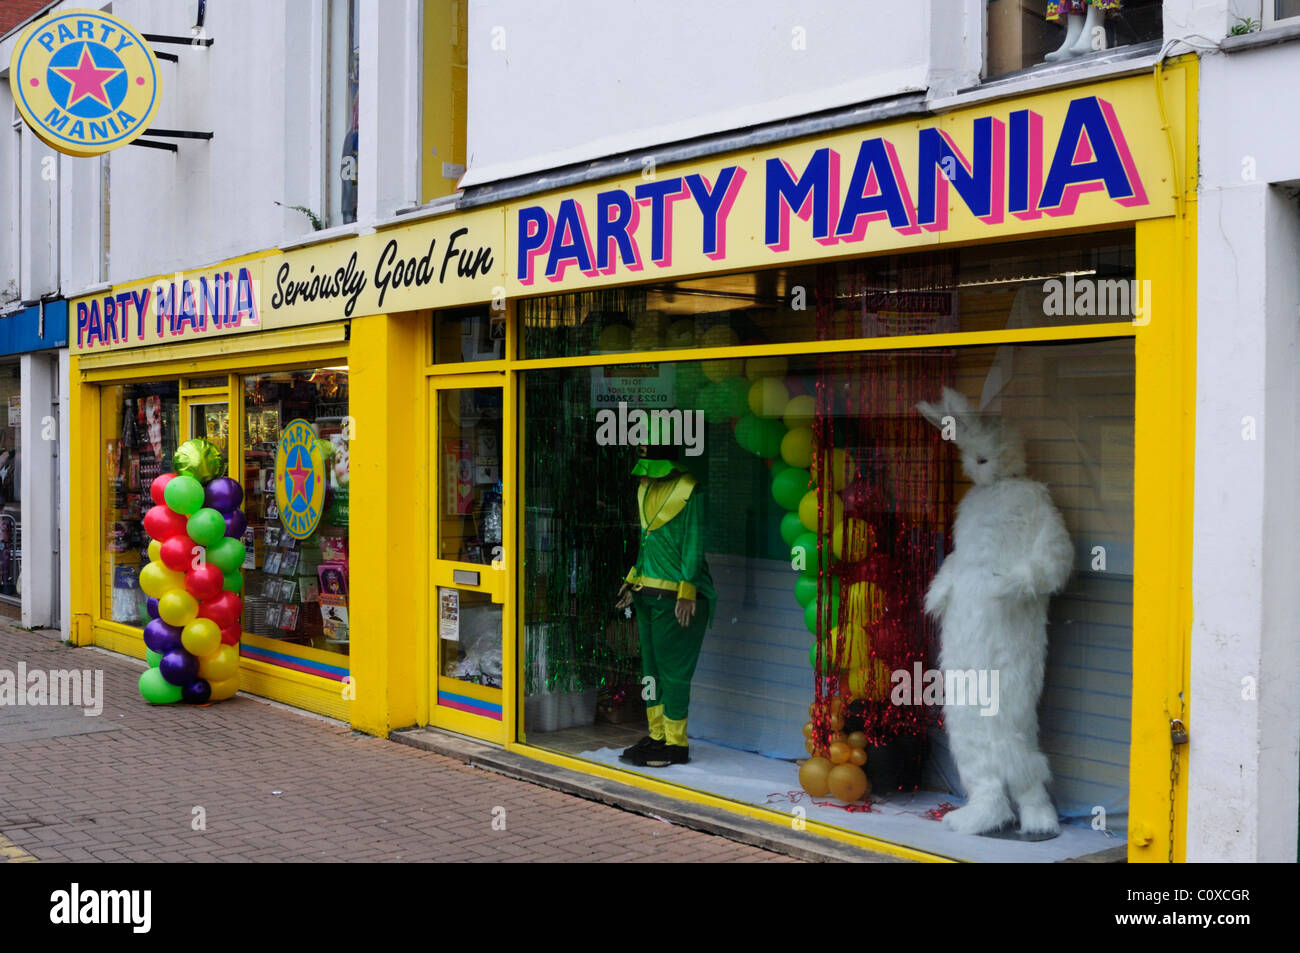 Party Mania Shop, Burleigh Street, Cambridge, England, UK Stock Photo